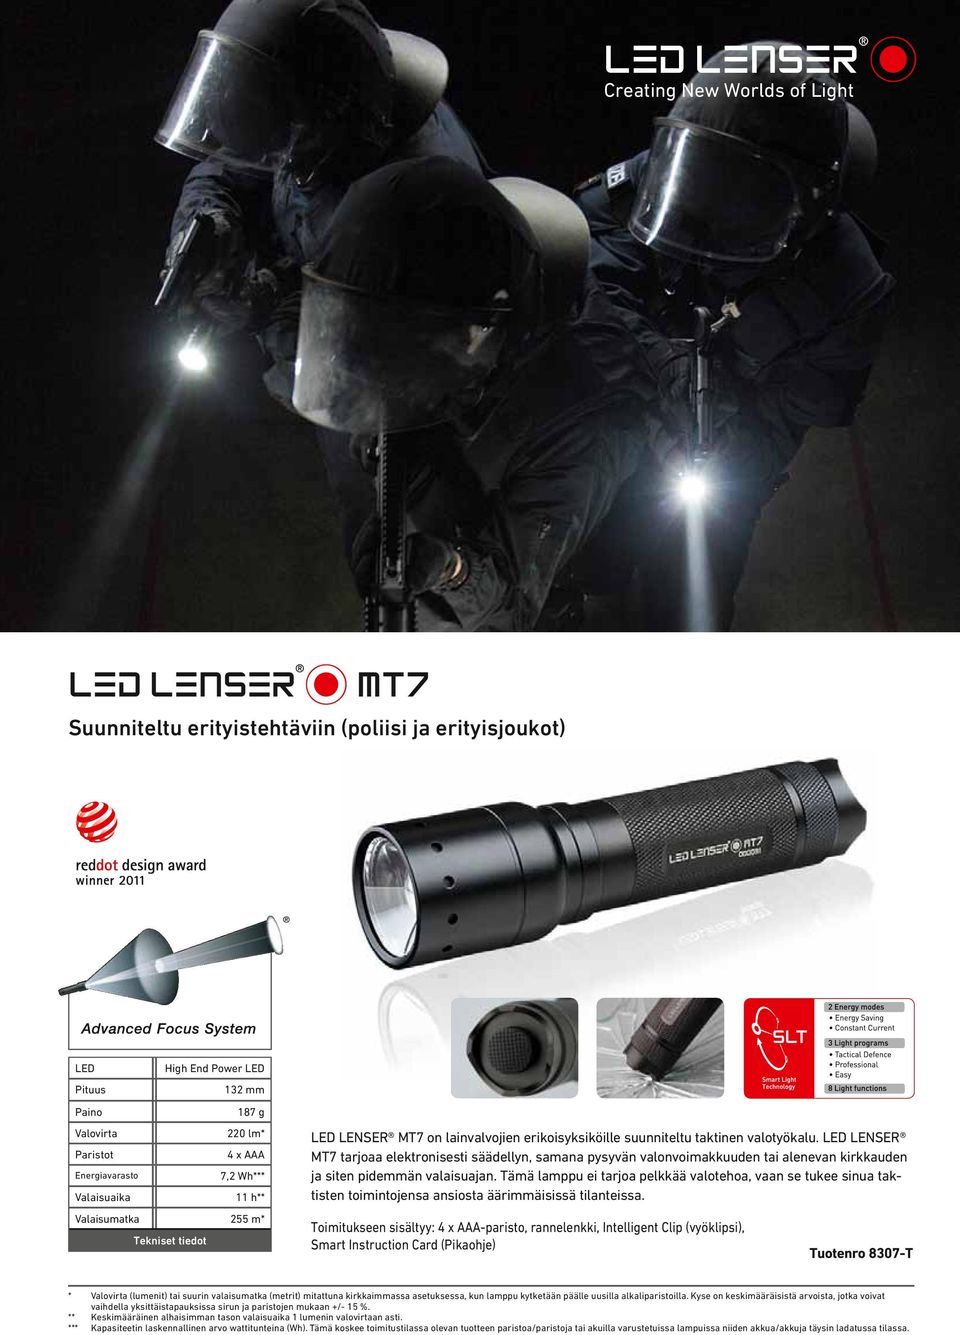 taktinen valotyökalu. LED LENSER MT7 tarjoaa elektronisesti säädellyn, samana pysyvän valonvoimakkuuden tai alenevan kirkkauden ja siten pidemmän valaisuajan.